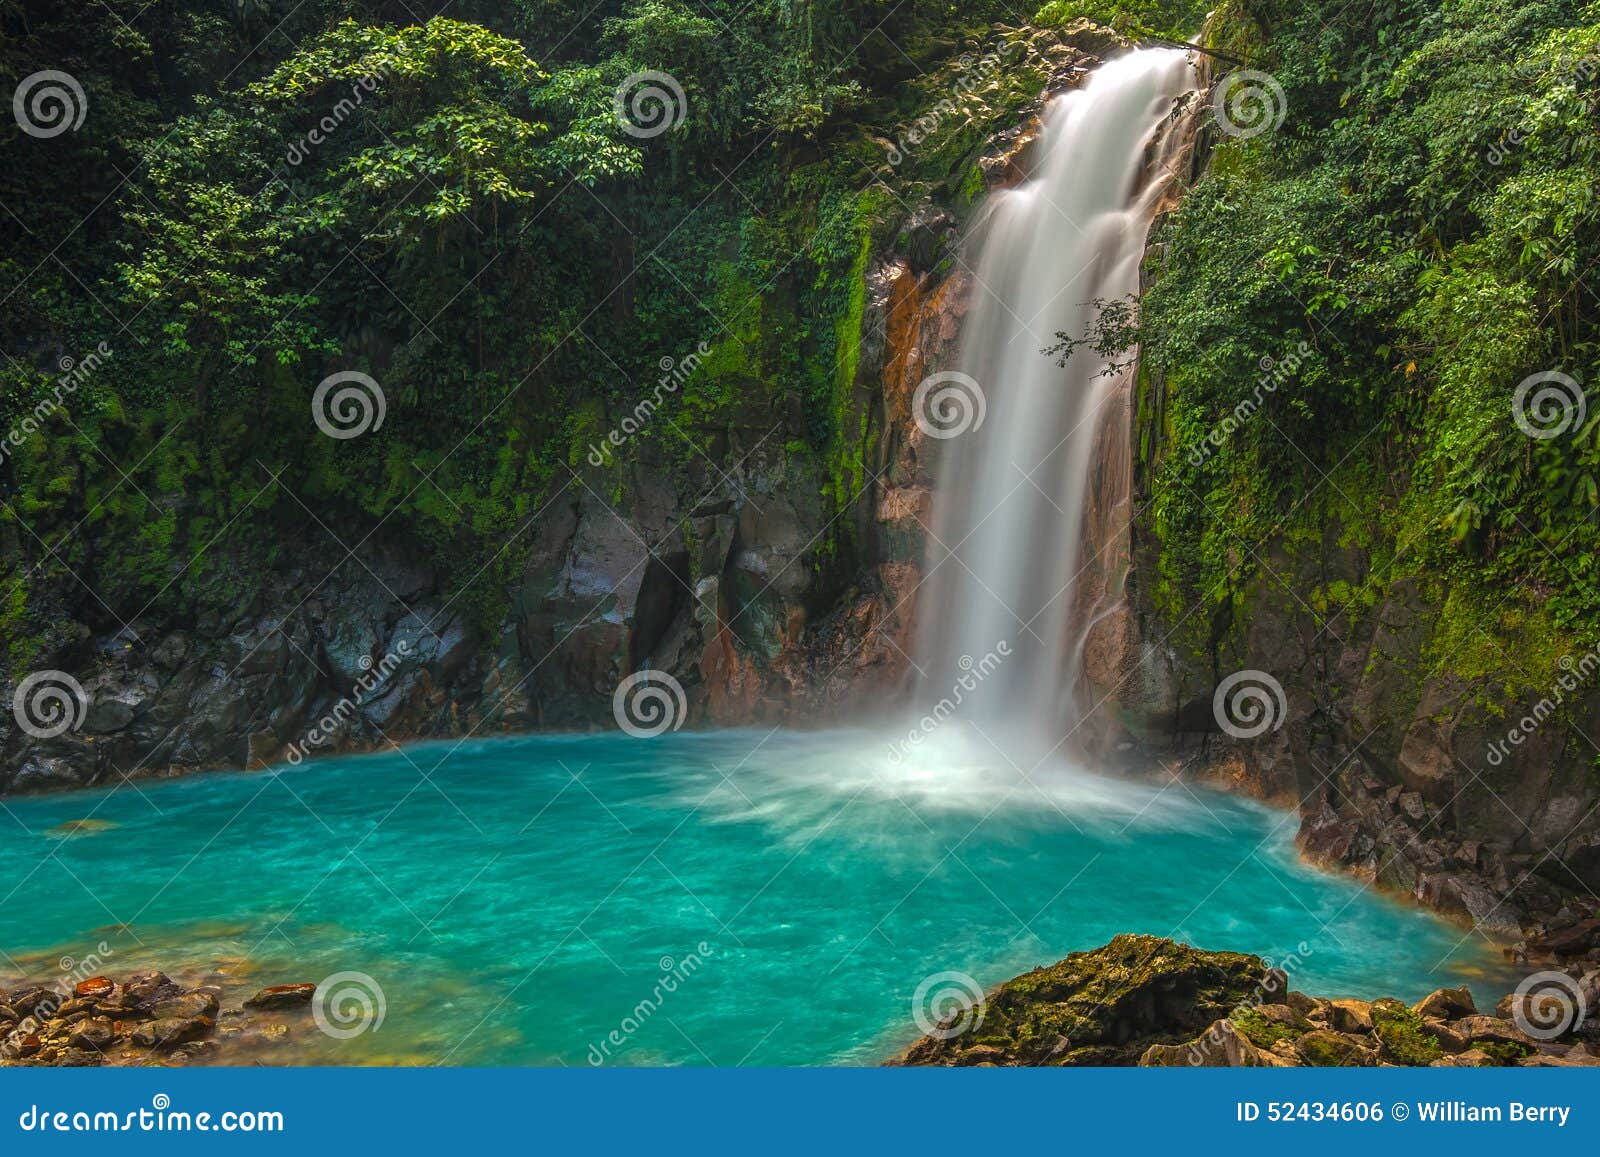 beautiful rio celeste waterfall